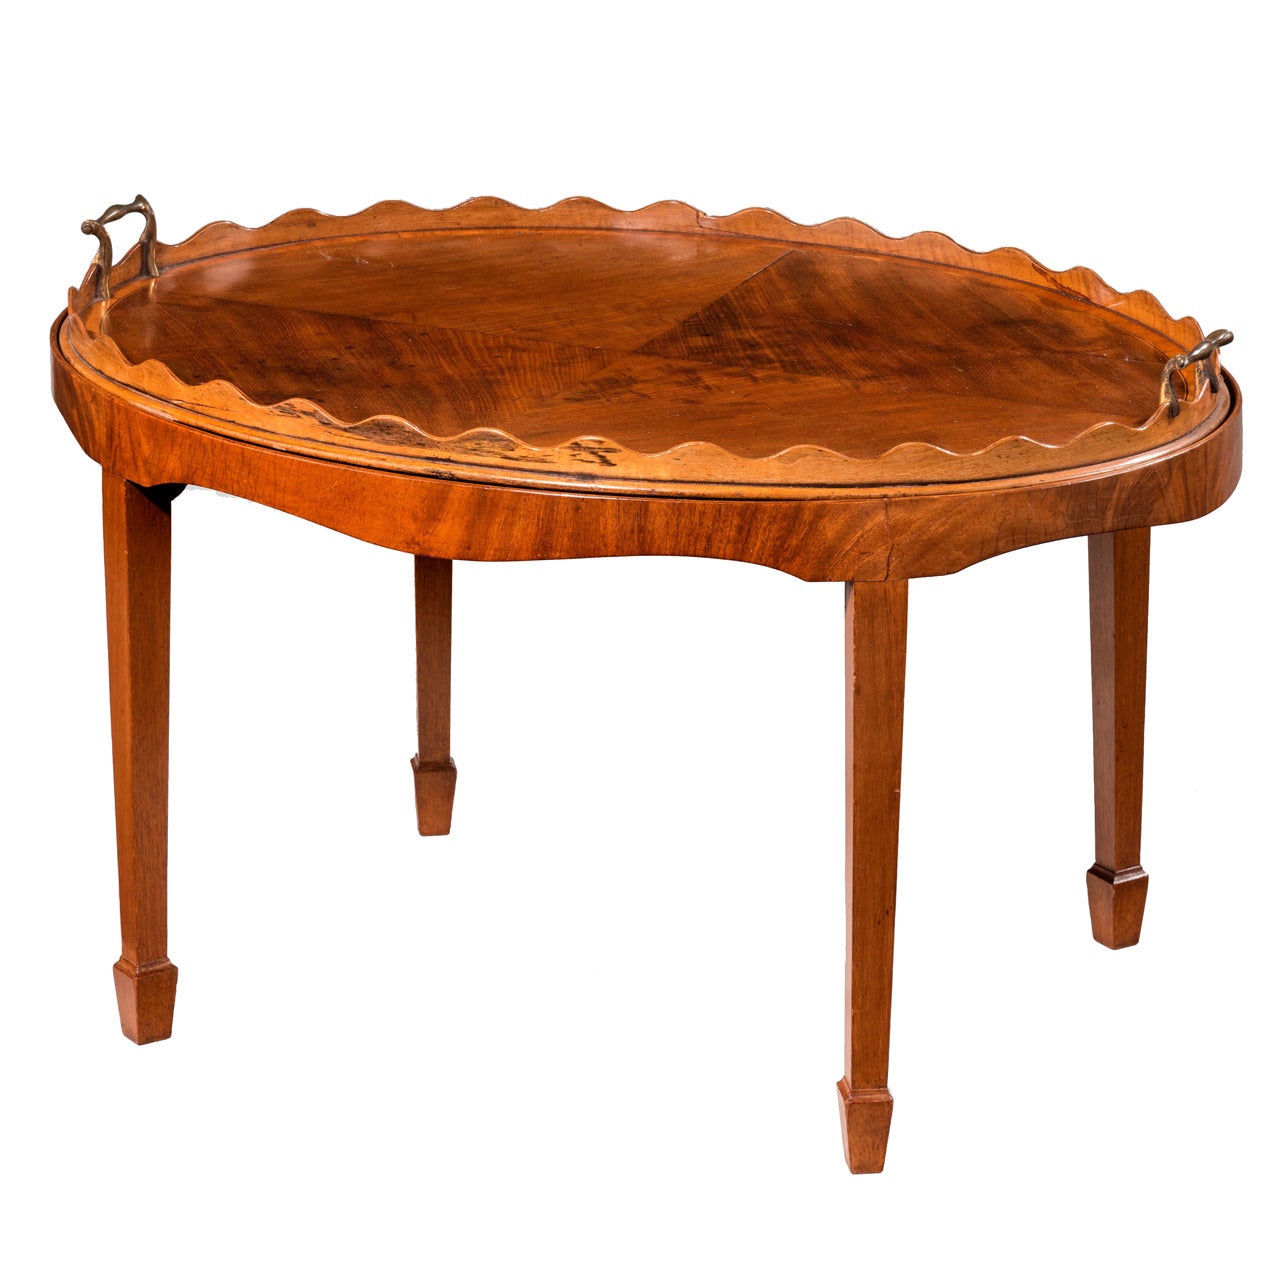 George III Style Oval Mahogany Tray Table